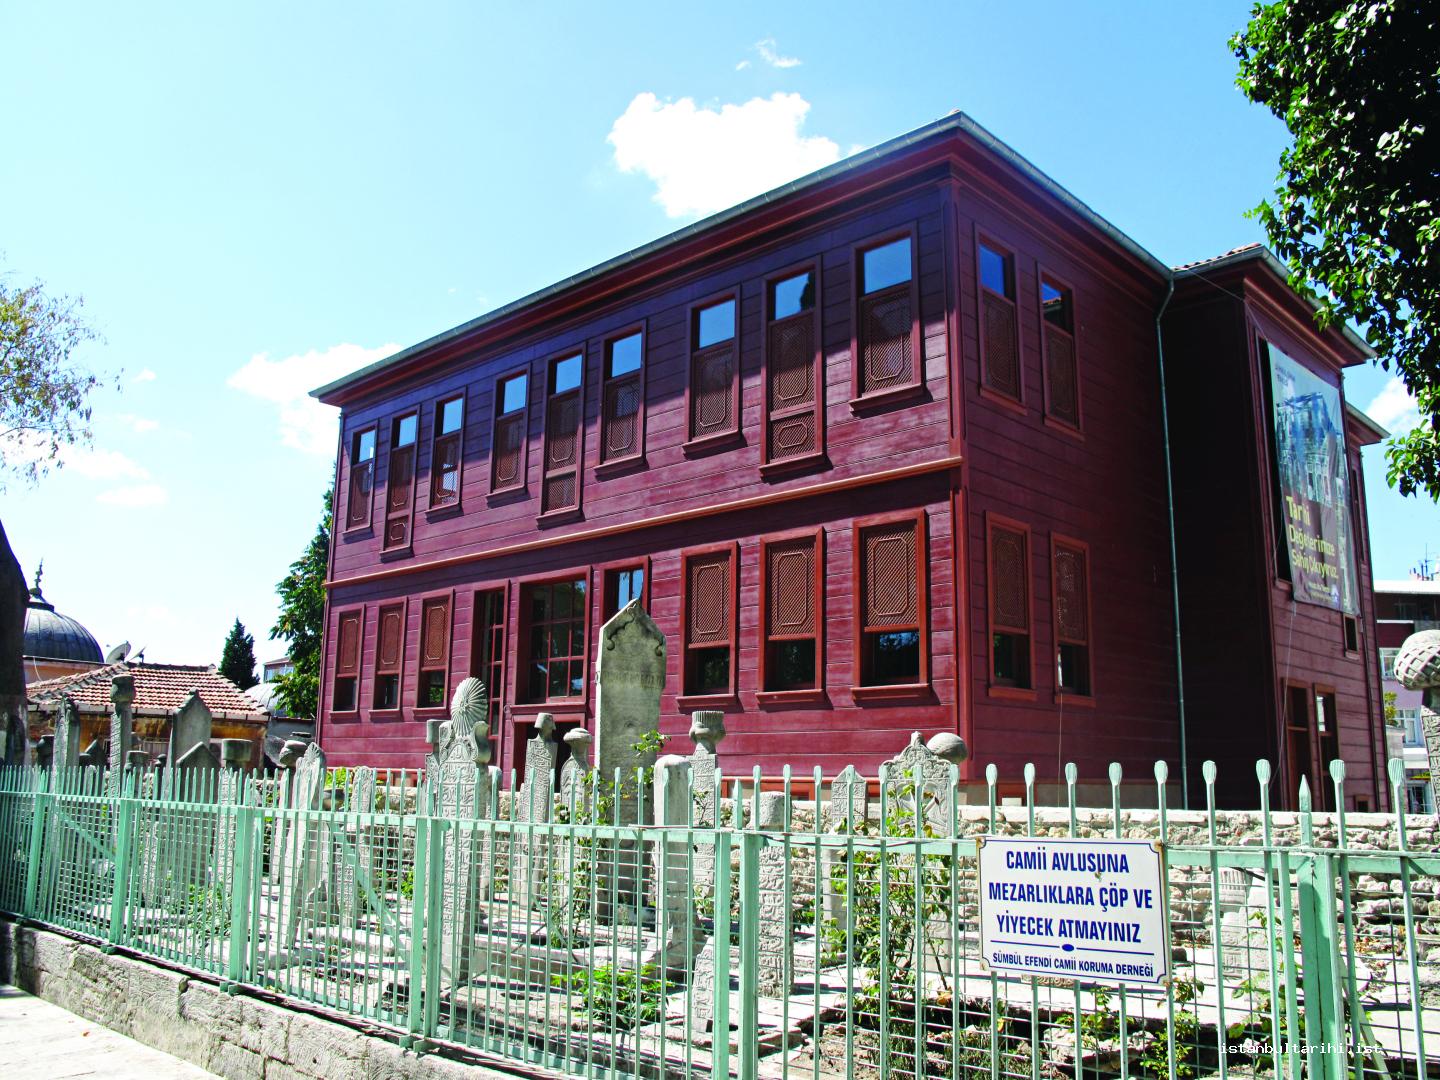 9- Sümbül Efendi Sufi Lodge, before and after restoration